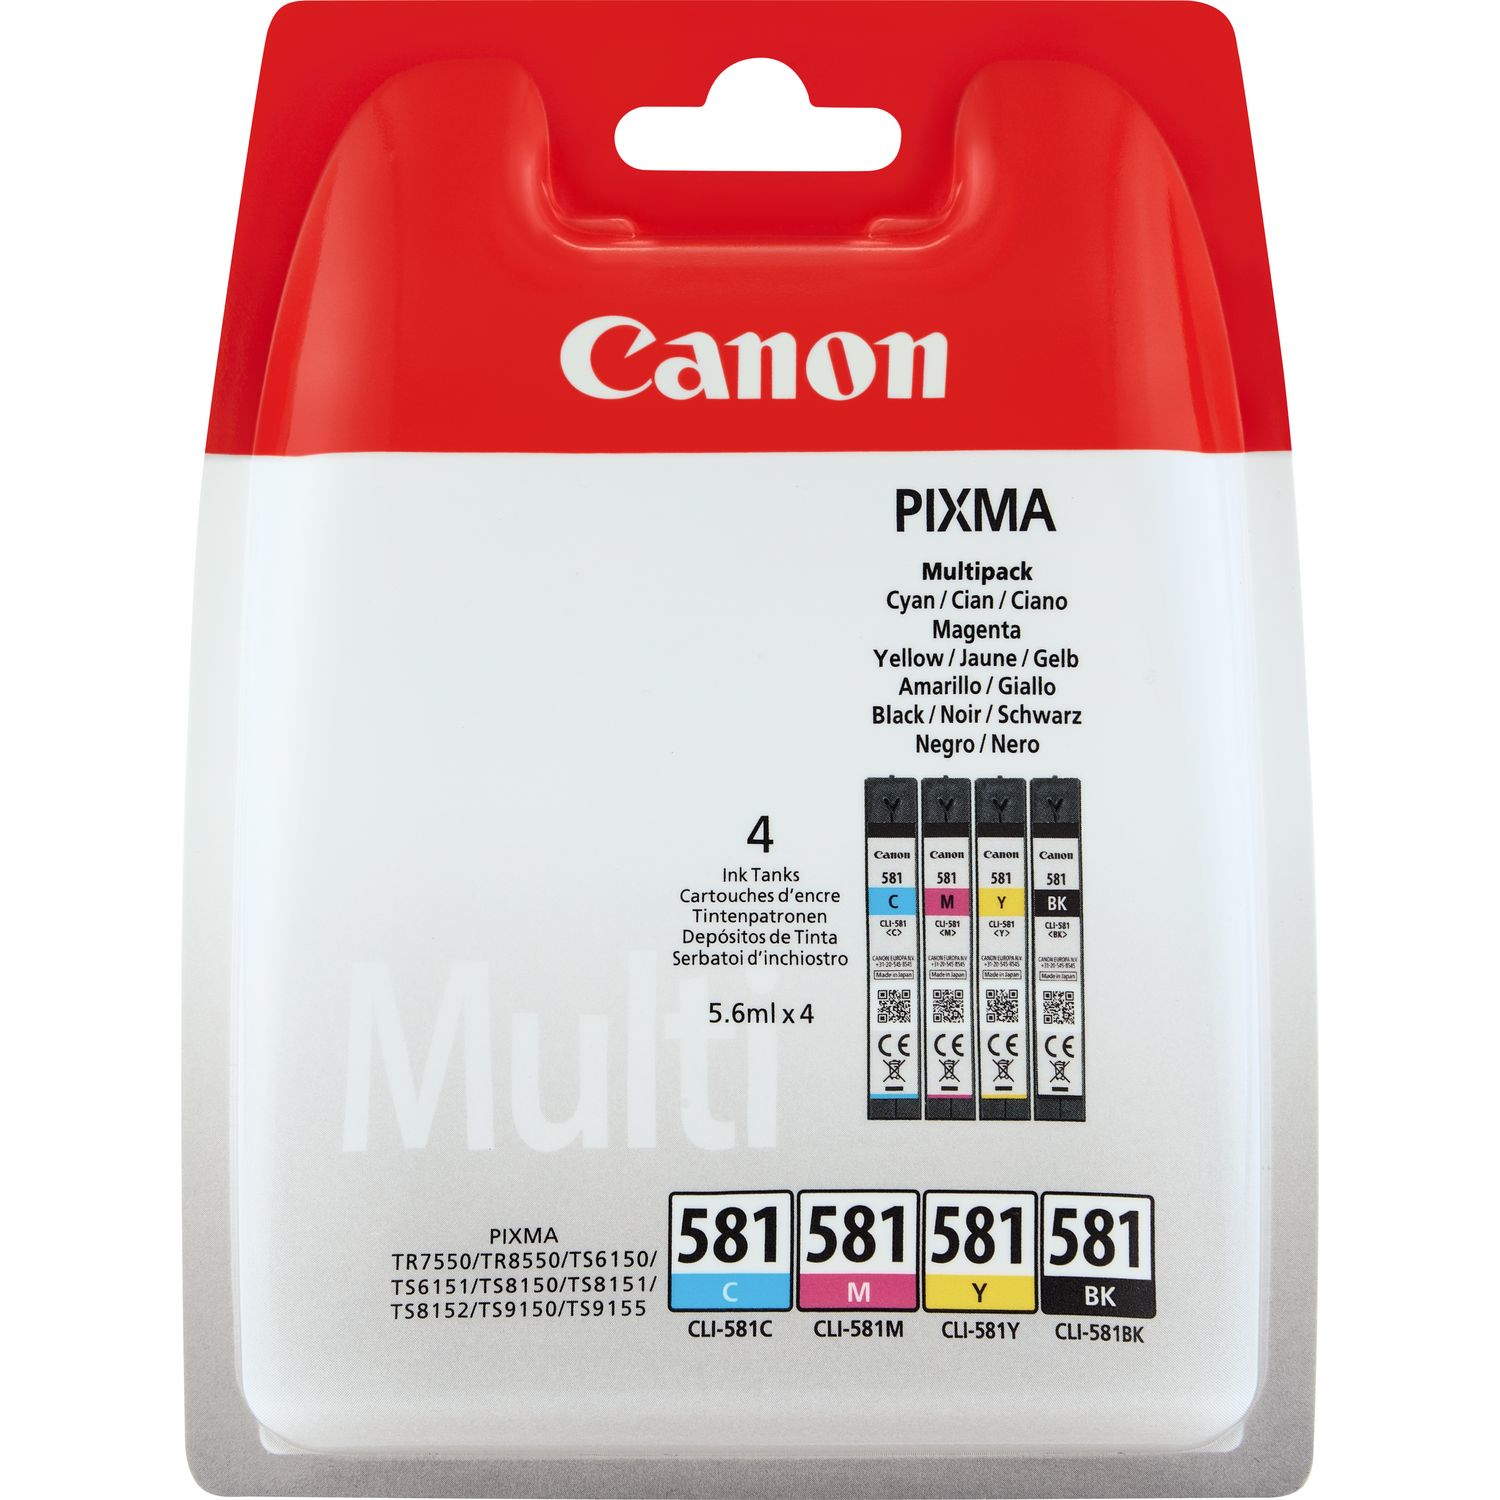 Afbeelding Canon CLI-581 Multipack 5.6ml 5.6ml Zwart, Cyaan, Magenta, Geel inktcartridge door Wohi.nl